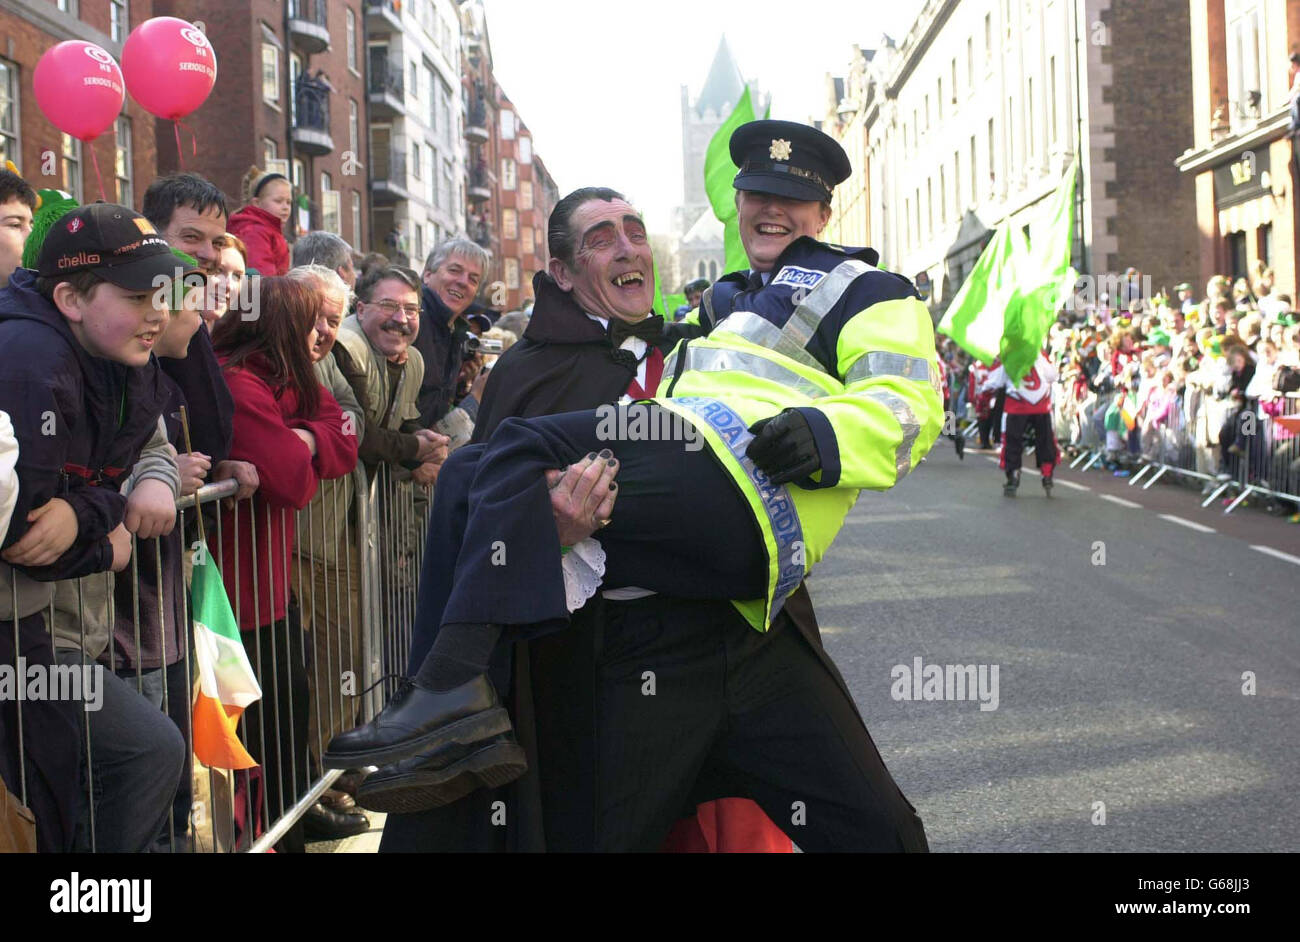 Le comte Dracula partage une blague avec un Garda, lors de la parade du Festival de la Saint-Patrick, à Dublin, en République d'Irlande. Banque D'Images